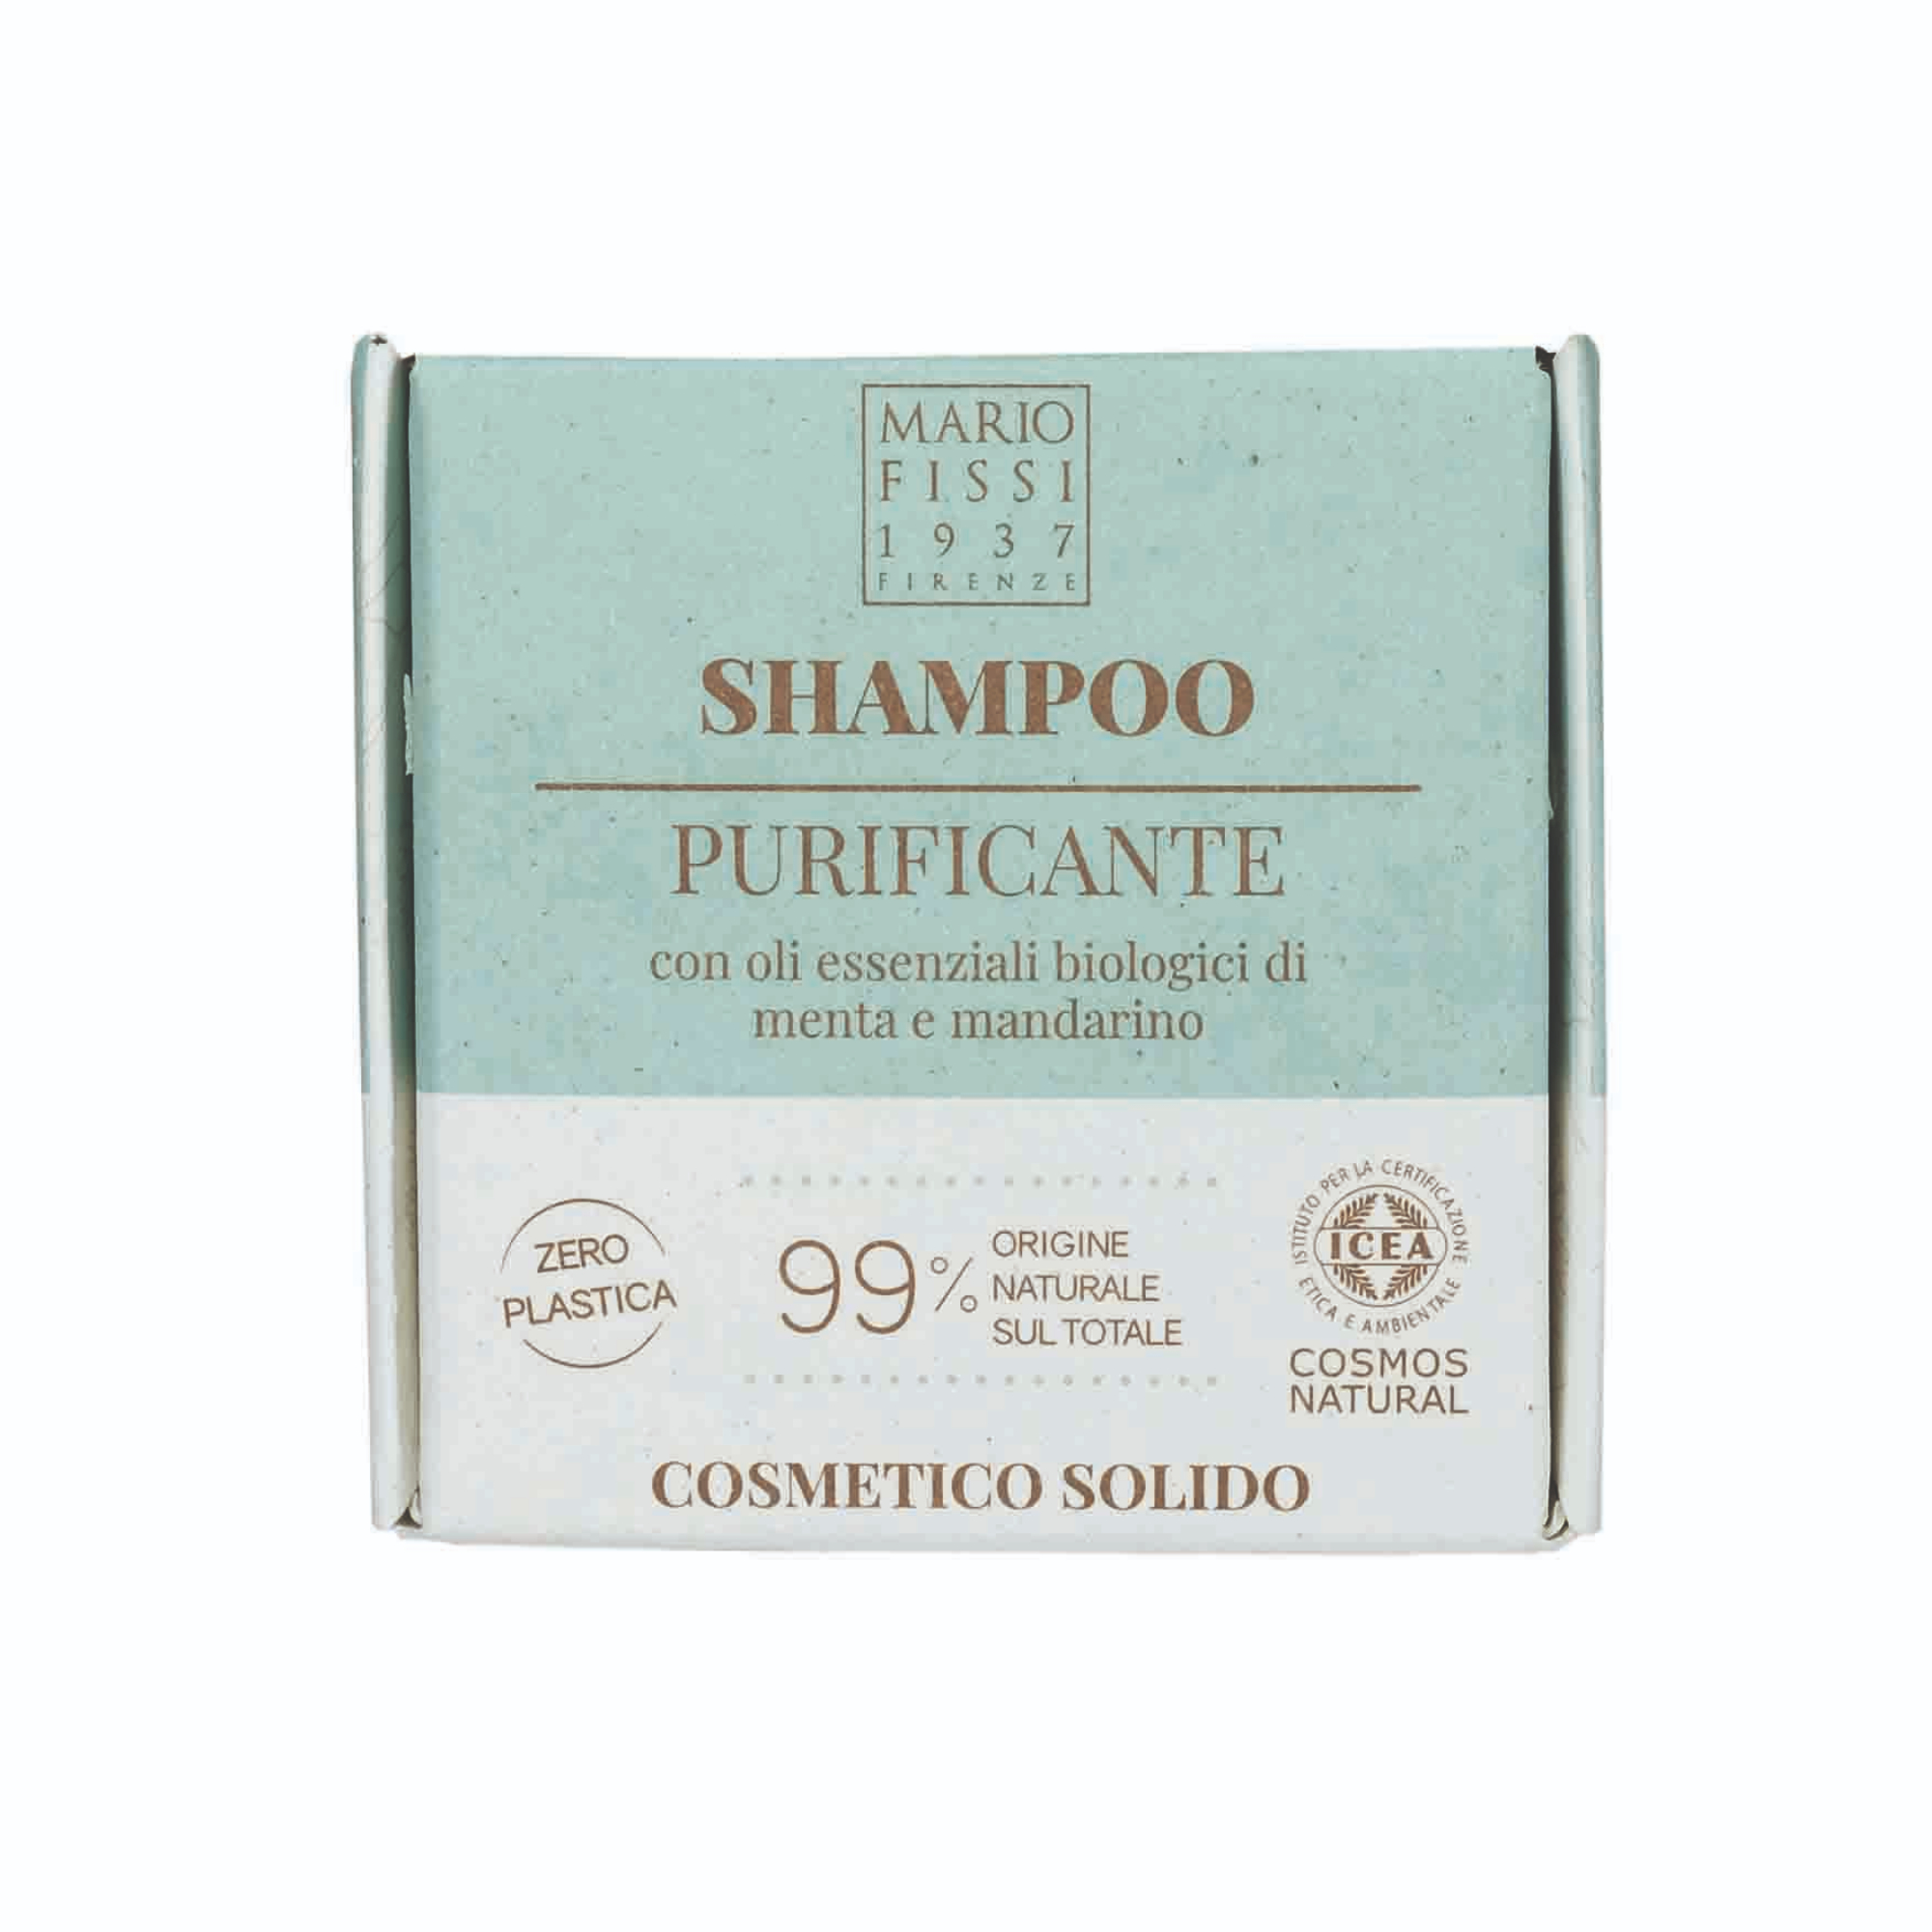 фото Твердый шампунь для волос mario fissi 1937 solid cosmetics purificante очищающий 50 г